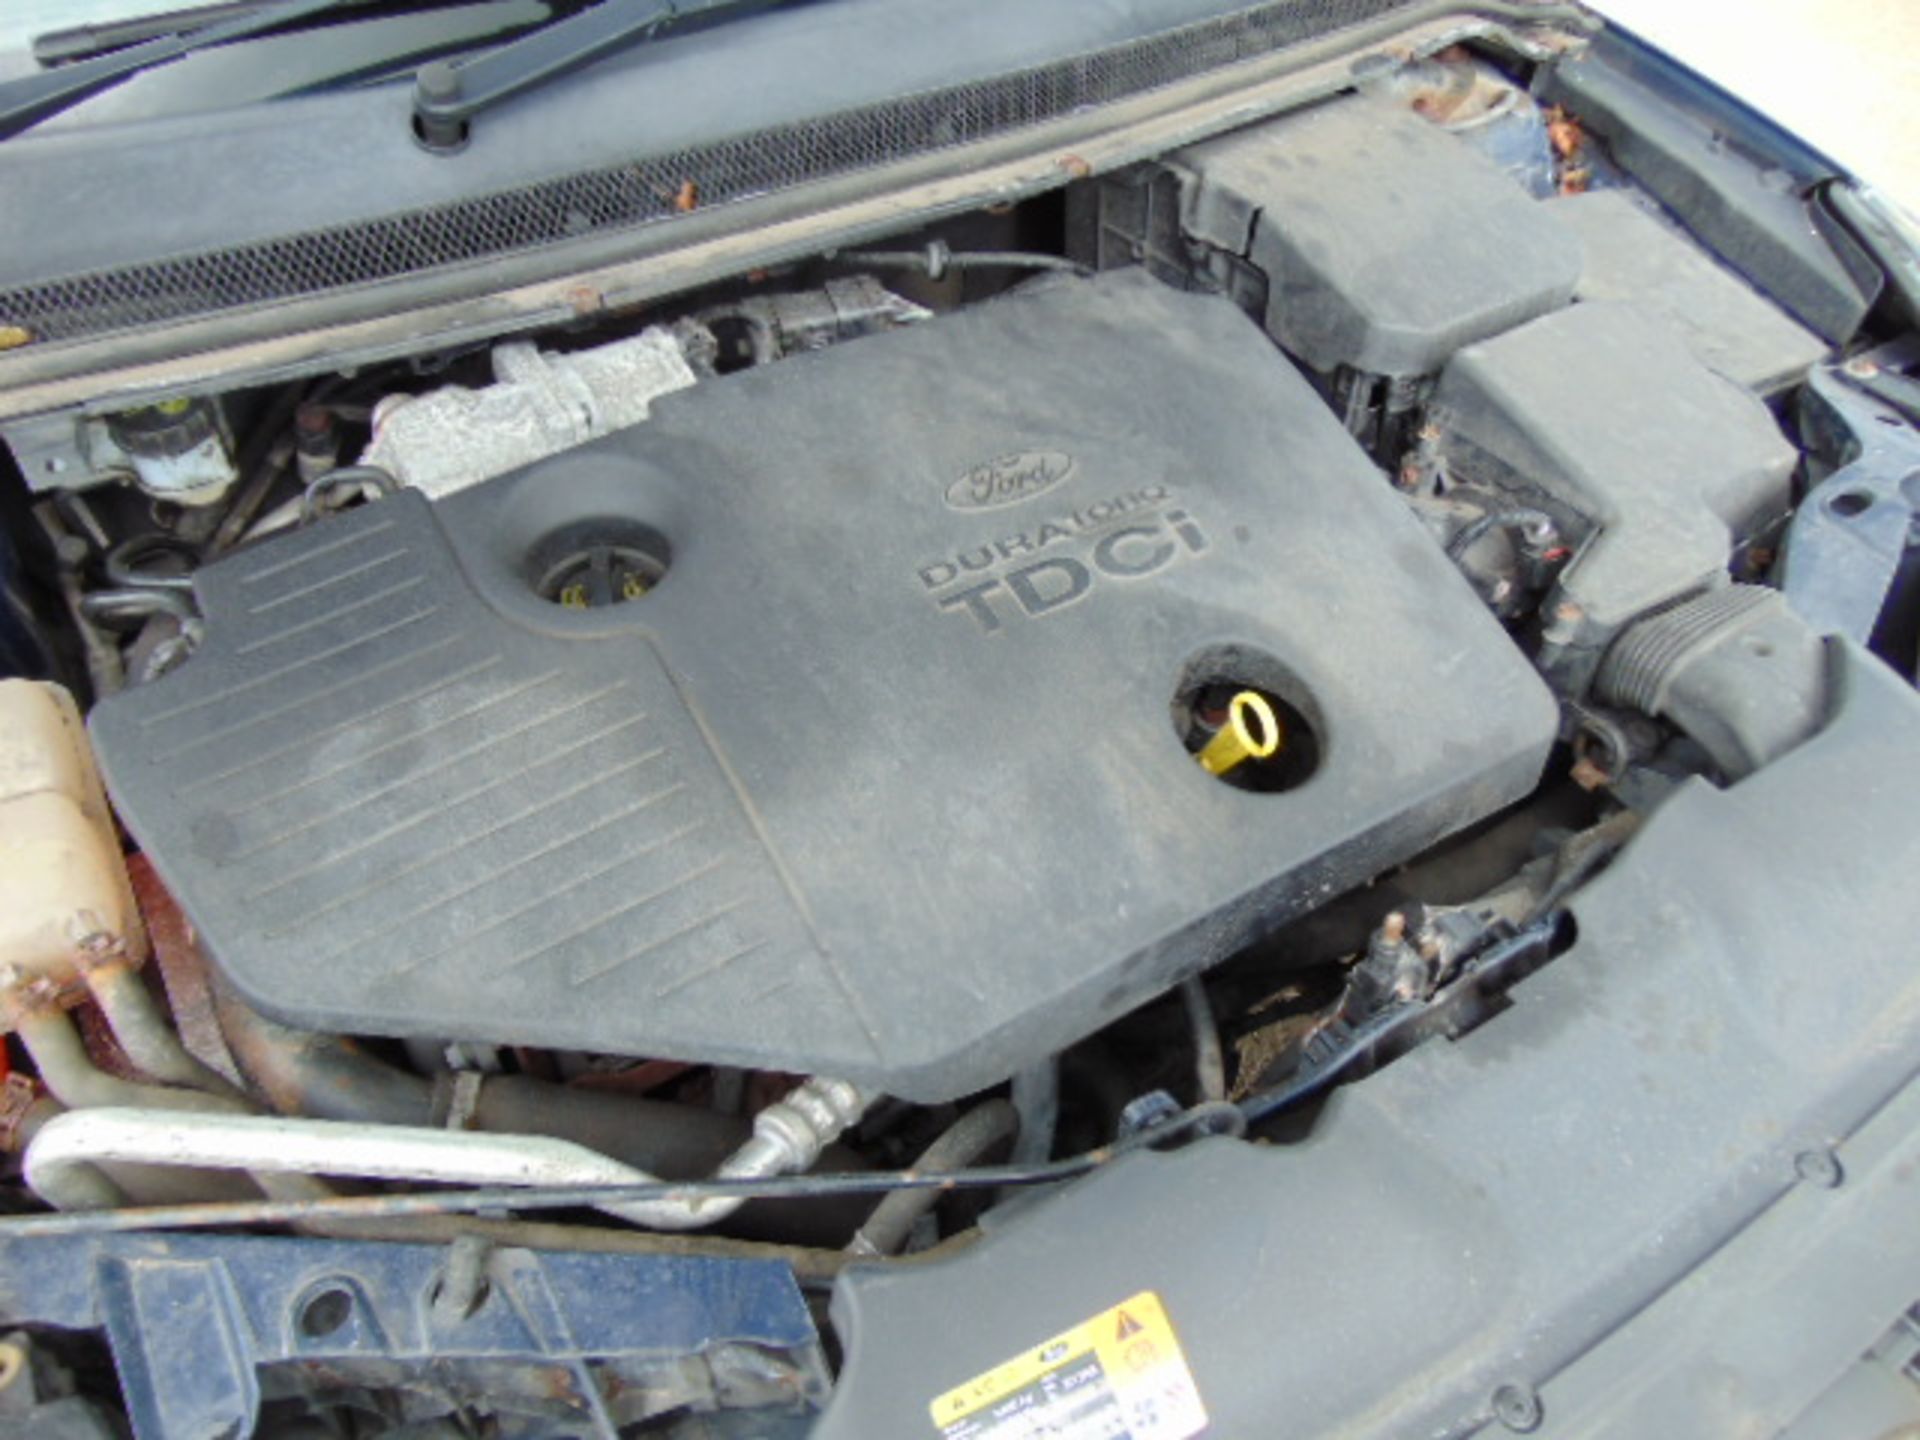 2008 Ford Focus 1.8 TDCI Zetec Hatchback - Image 16 of 17